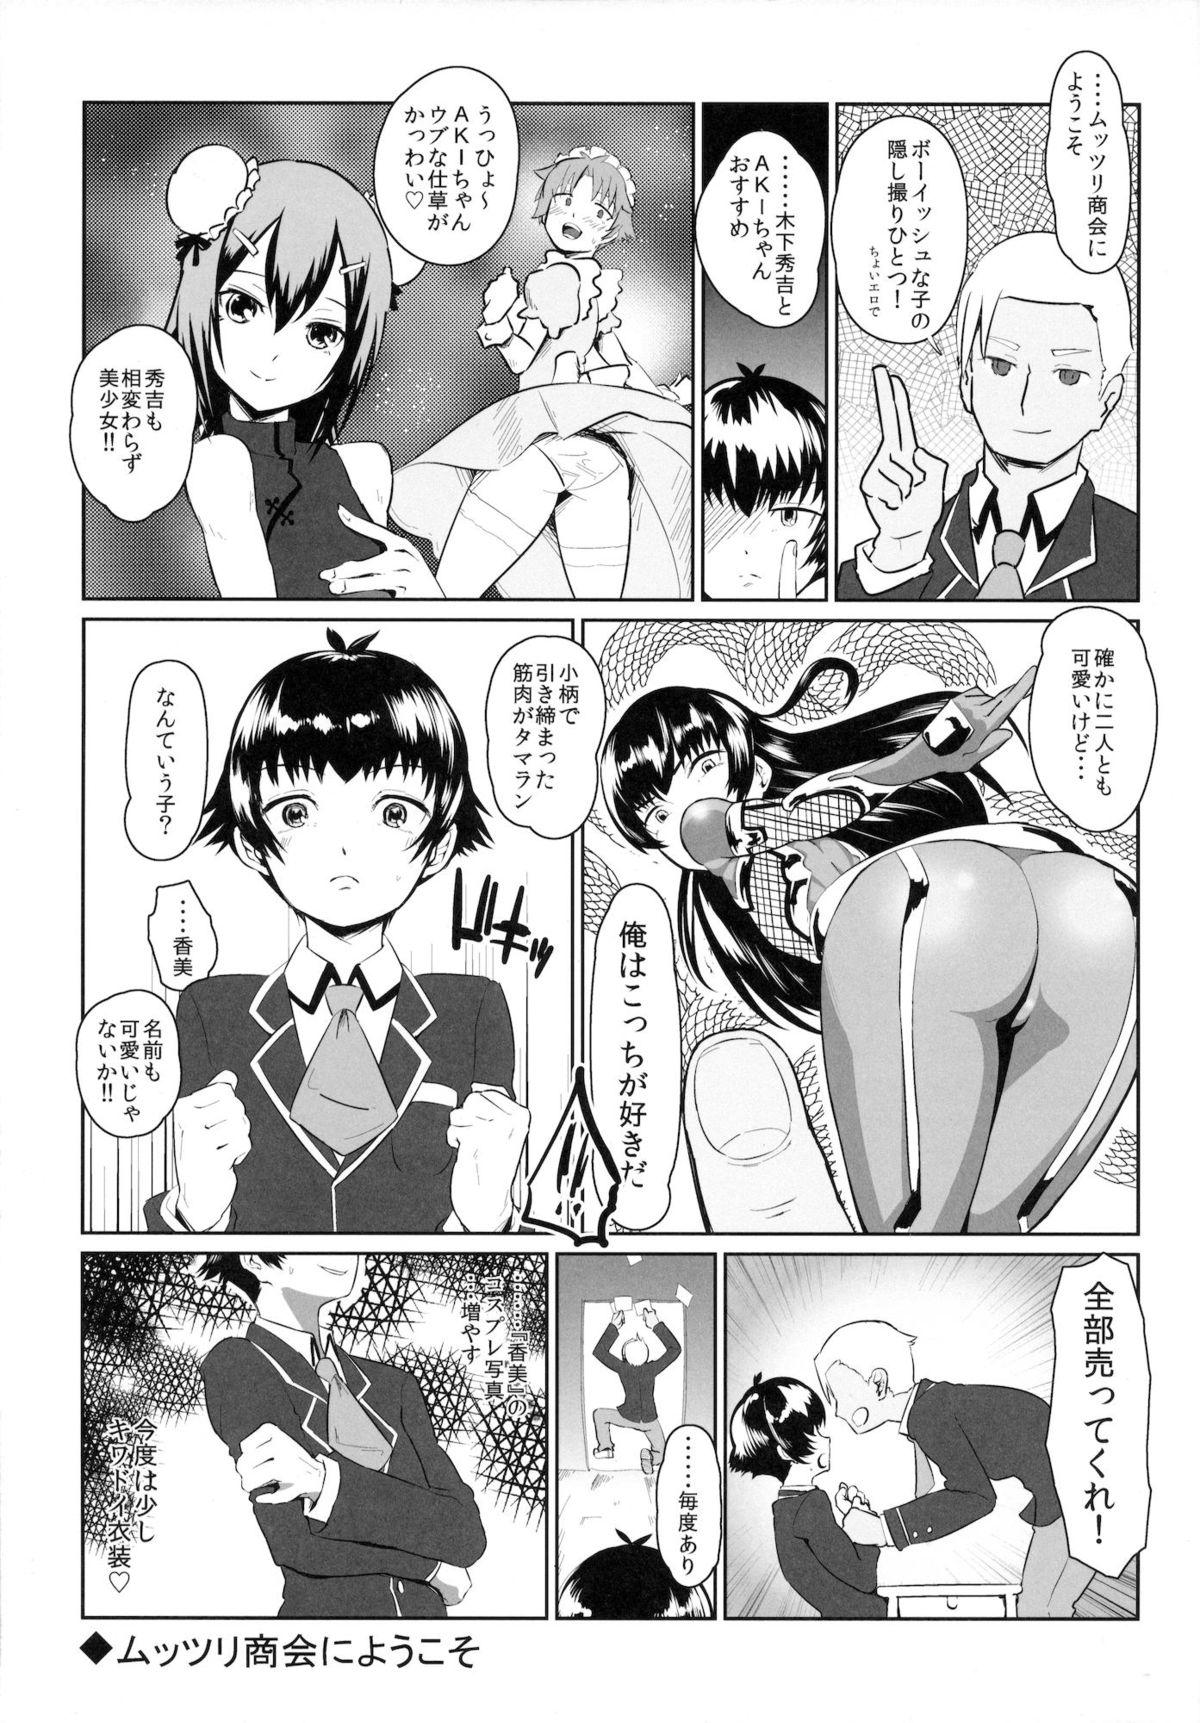 Soft Muttsuri Shoukai ni Youkoso - Baka to test to shoukanjuu Spy - Page 4